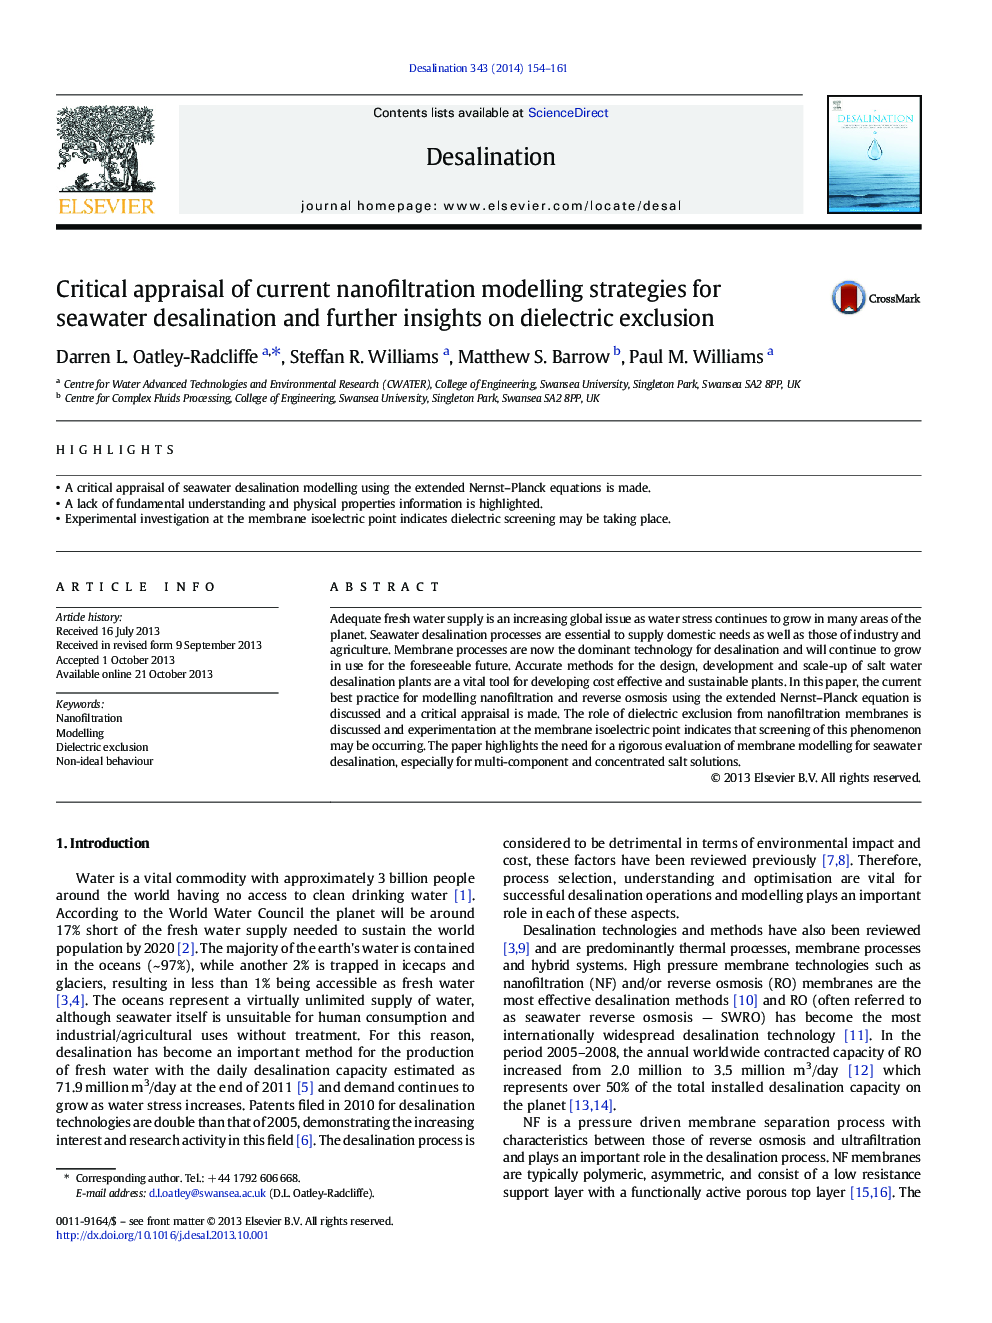 ارزیابی انتقادی از استراتژی های مدل سازی نانوفیلتراسیون برای آب شیرین سازی آب دریا و درک بیشتر درباره حذف انعکاسی دی الکتریک 